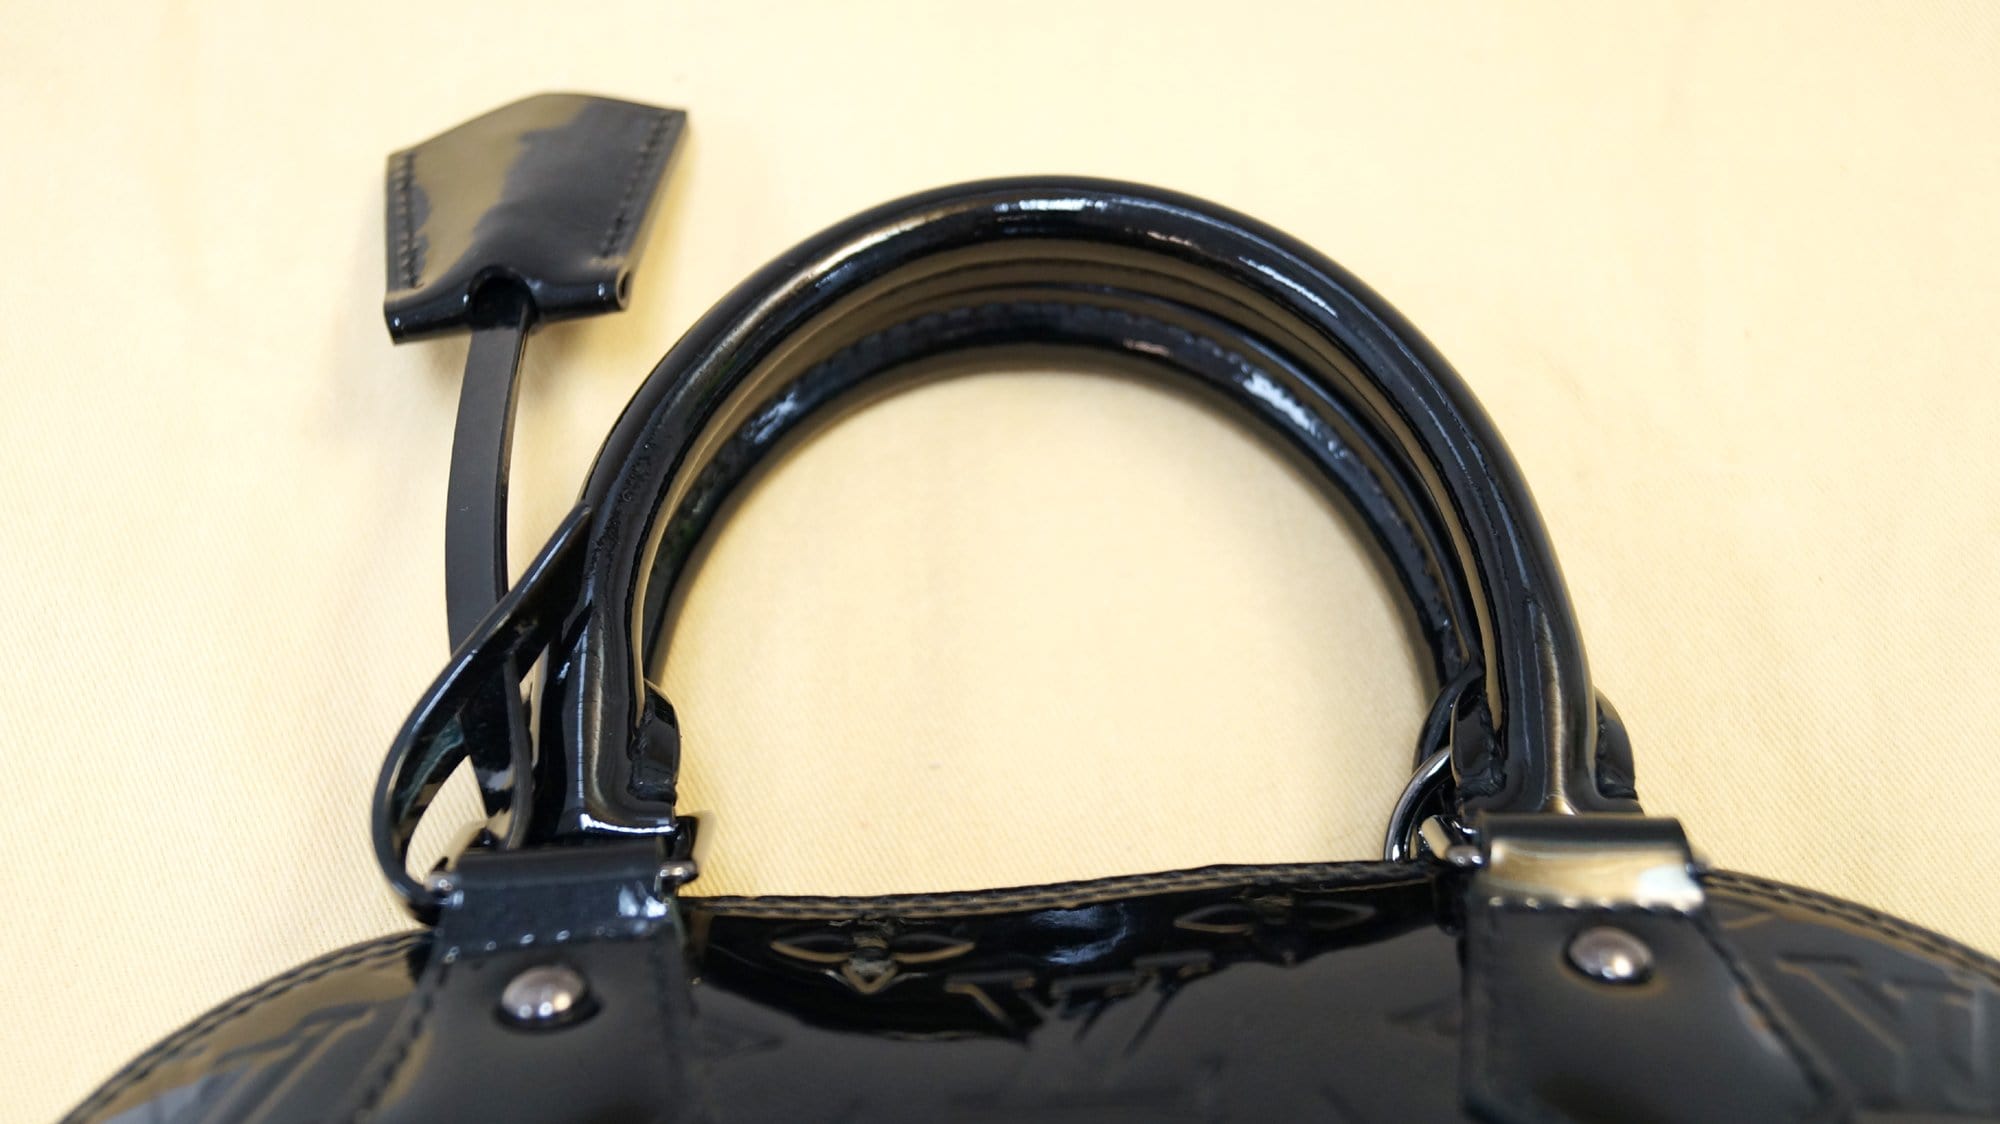 Louis Vuitton Black Magnetique Monogram Vernis Leather Alma BB Bag